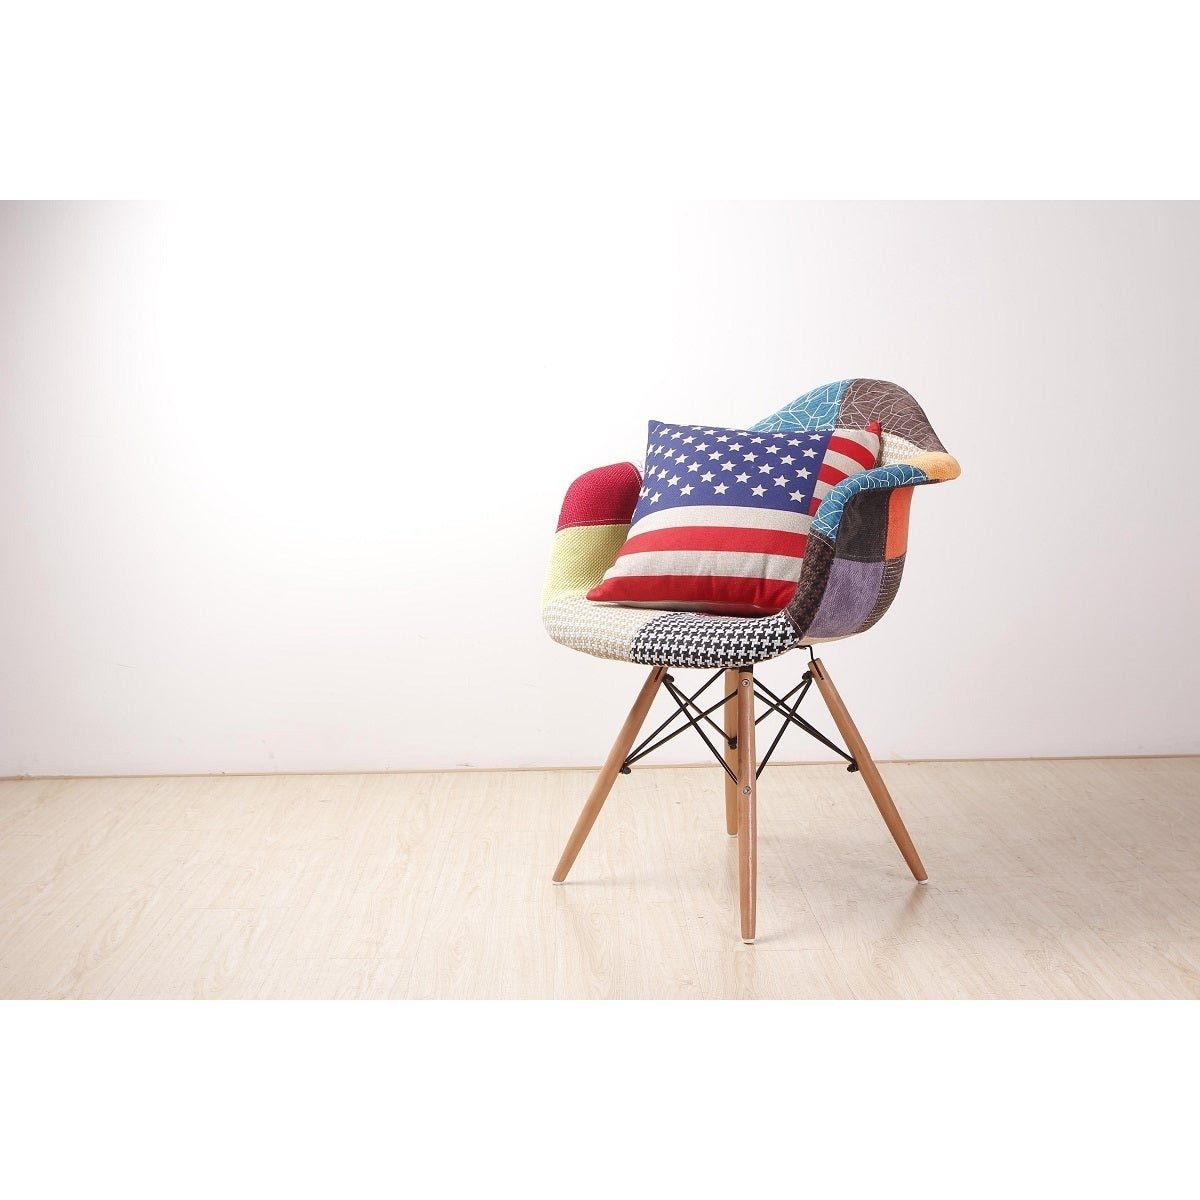 Cadeira Charles Eames Patchwork com Braços - 1